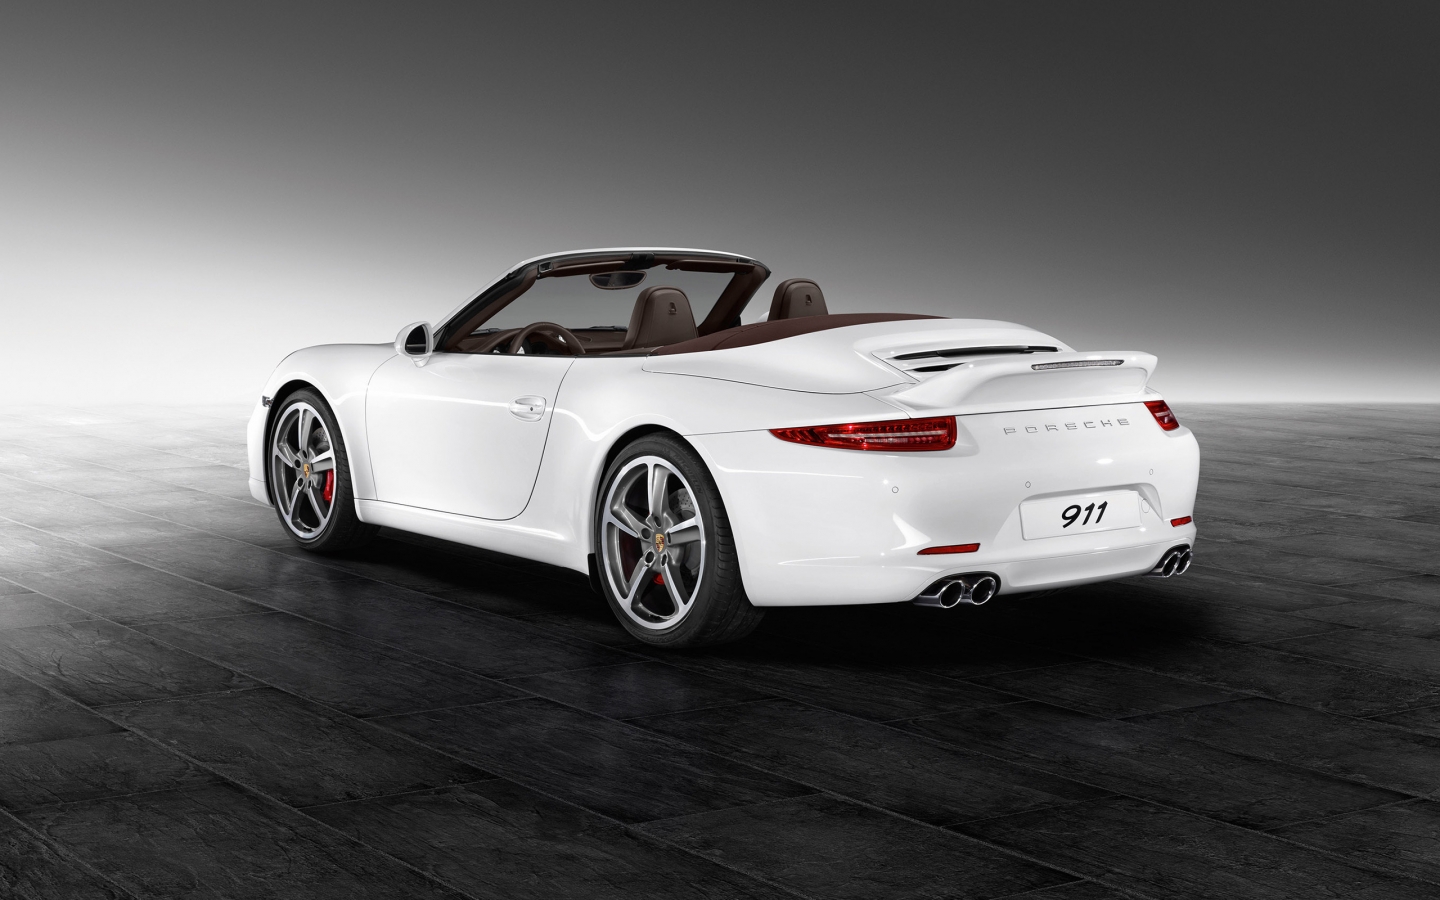 White Porsche 911 Carrera S for 1440 x 900 widescreen resolution